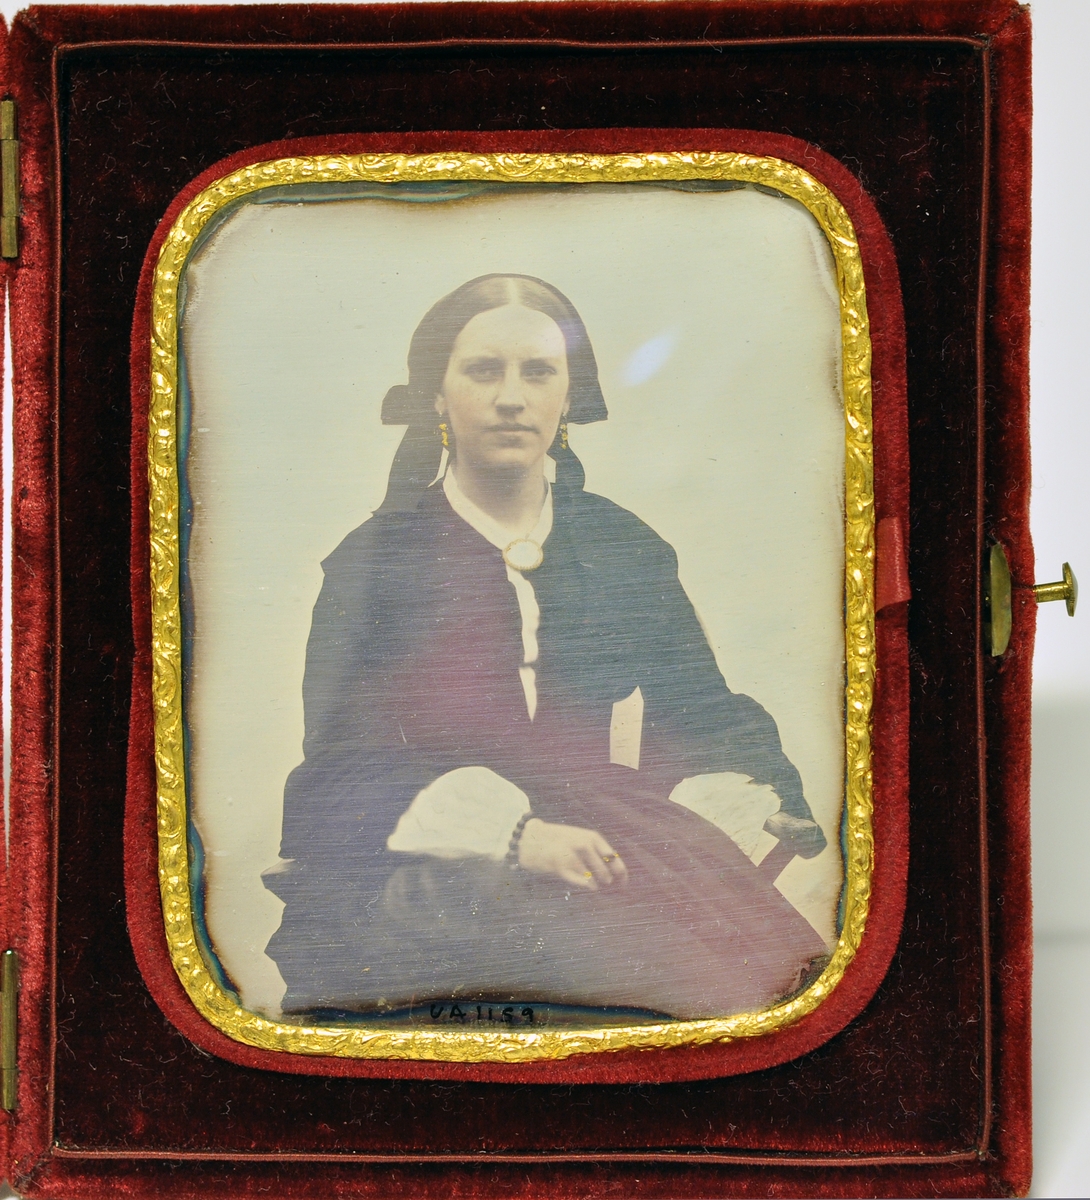 Daguerrotypi i etui. Etui dekket med rød fløyel. To små hengsler og knapp til å åpne. Innvendig portrett av sittende kvinne, gullkant med reileffdekor rundt fotogarfiet, avrundede hjørner. Bildet kan taes ut av etuiet. Kvinnen er Charlotte Aall (1835-1908).